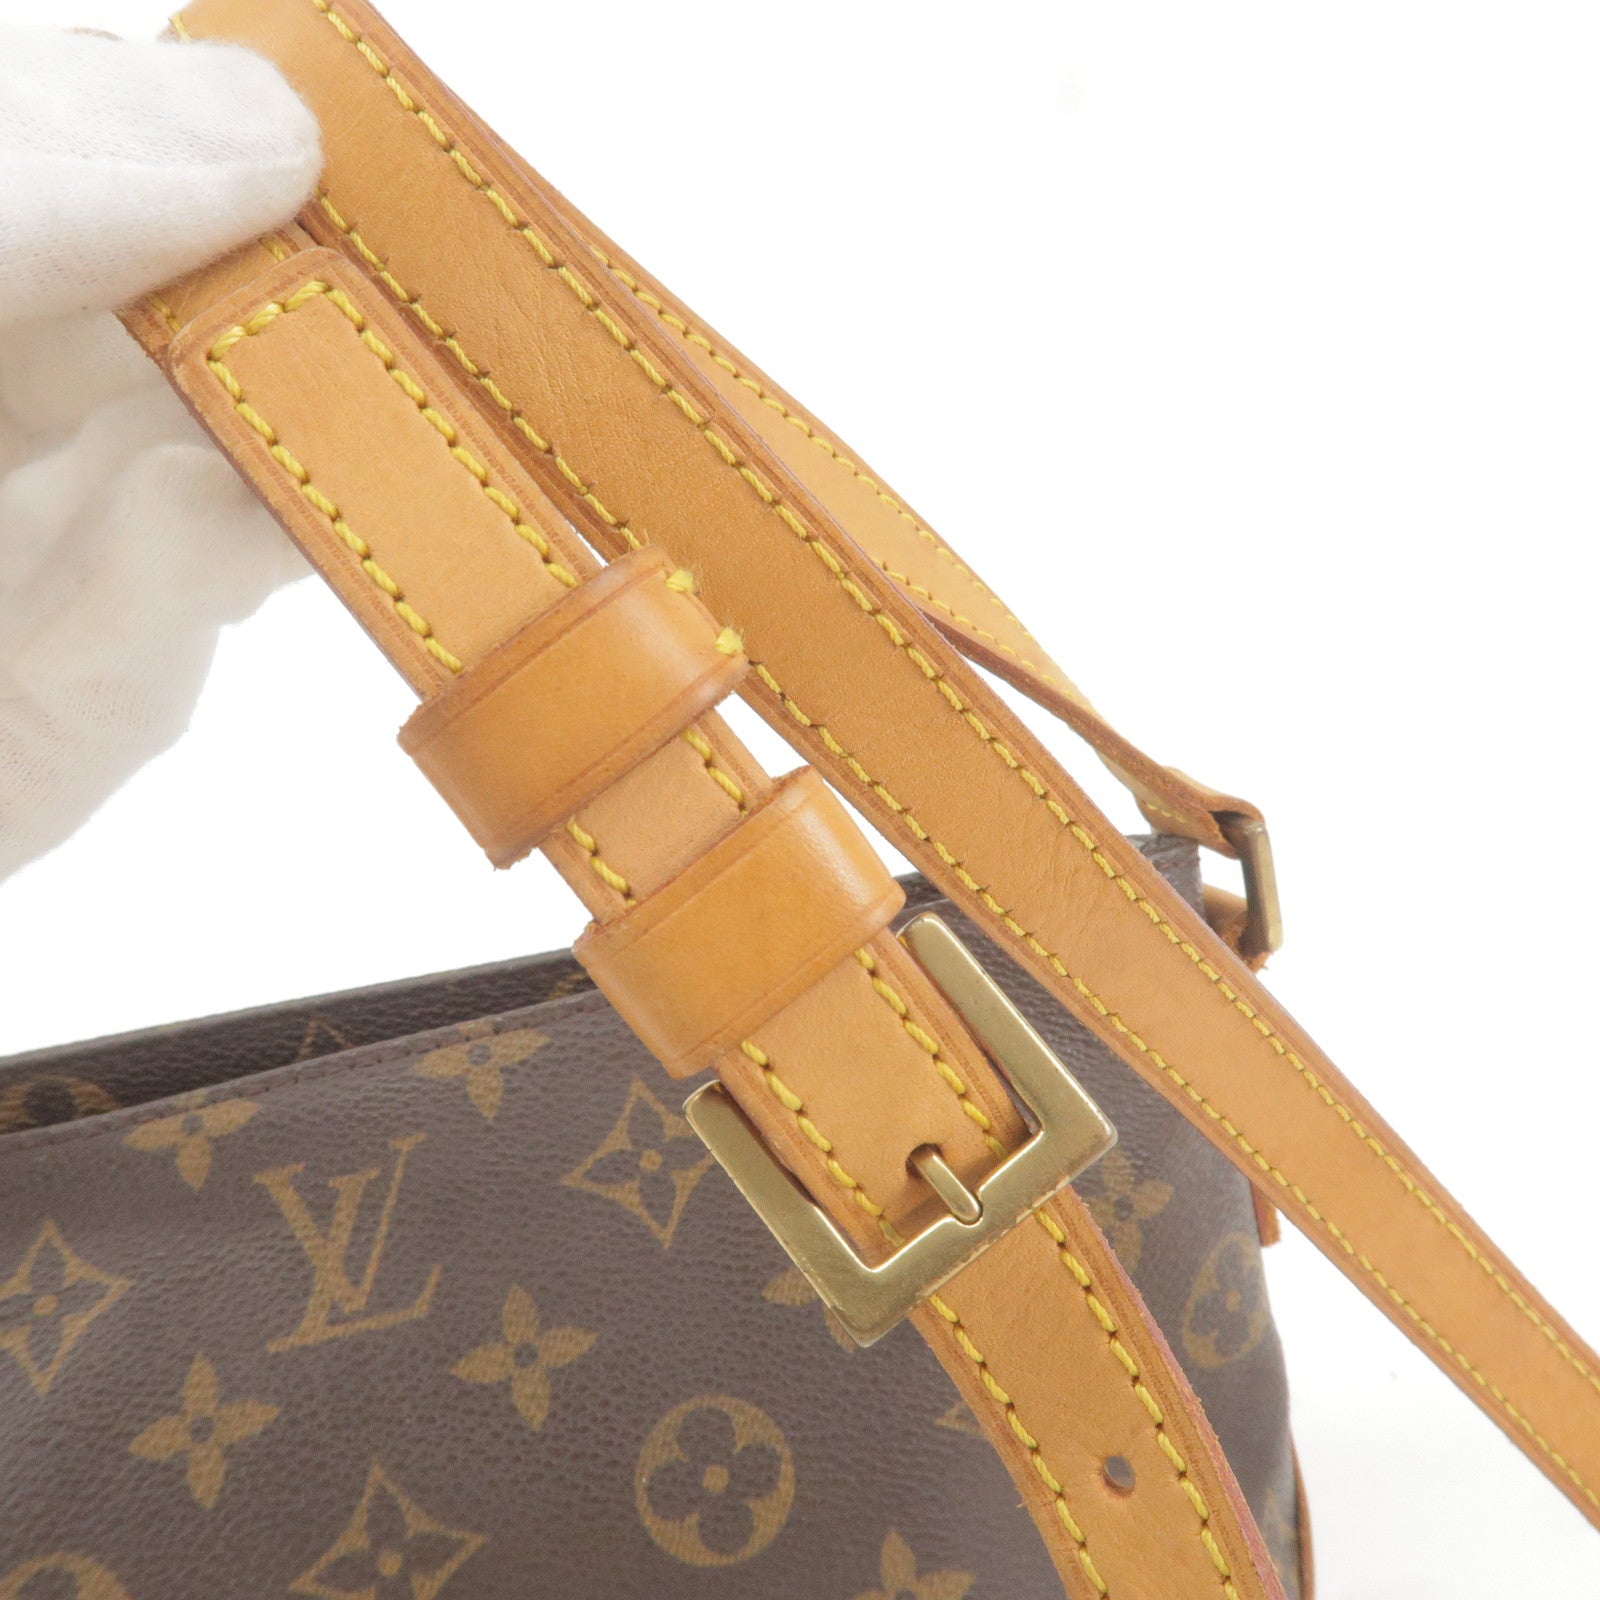 Shop for Louis Vuitton Monogram Canvas Leather Trotteur Crossbody